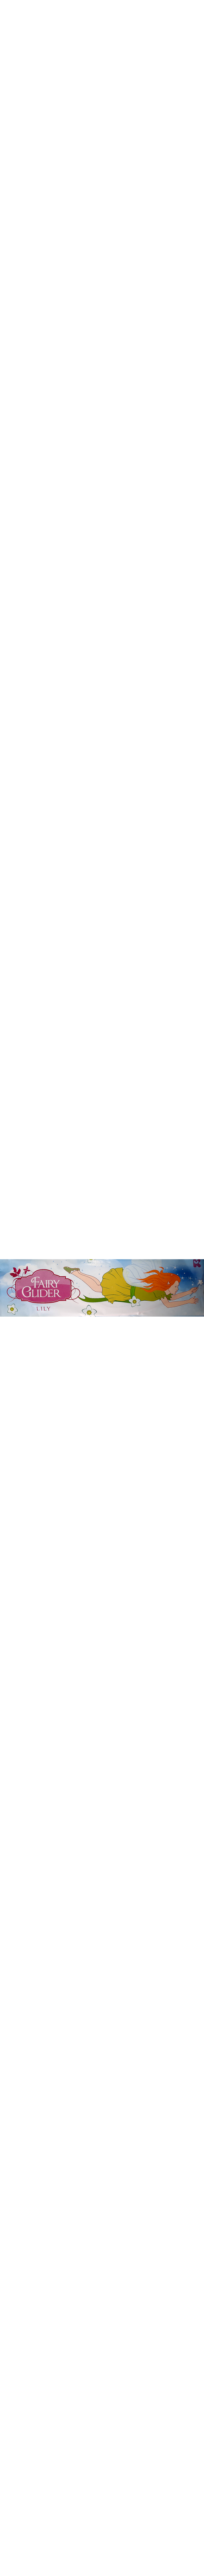 Toy Fairy Glider, hossza 24 cm, KCGL154_609, Keycraft, Liliom